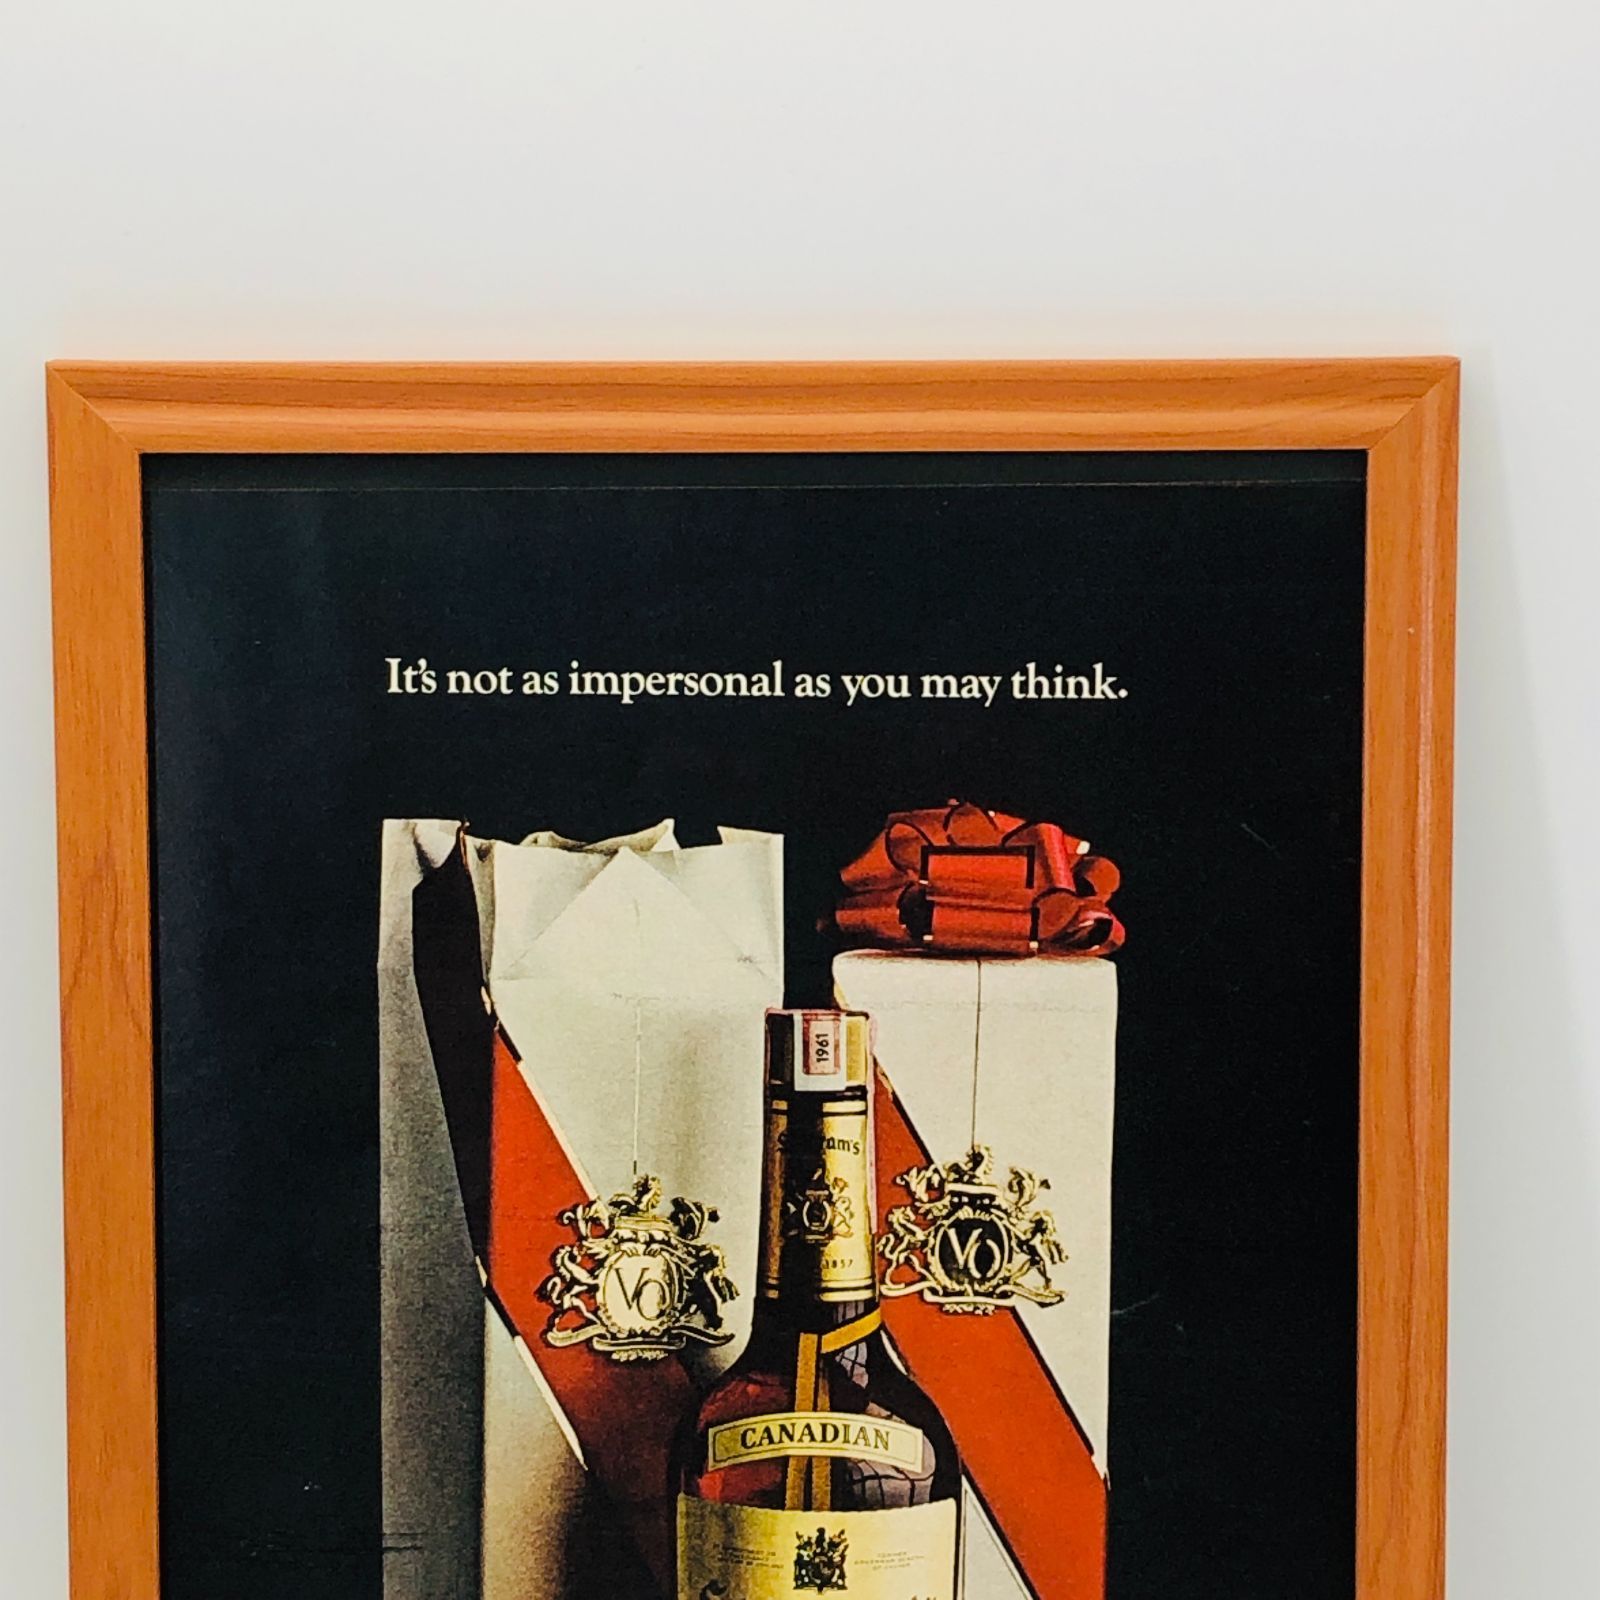 貴重な当時物 ビンテージ 広告 フレーム付 『 シーグラムV.Oウイスキー 』 1960年代 オリジナル アメリカ 輸入雑貨 ヴィンテージ 海外雑誌  アドバタイジング レトロ ( AZ1469 ) - メルカリ